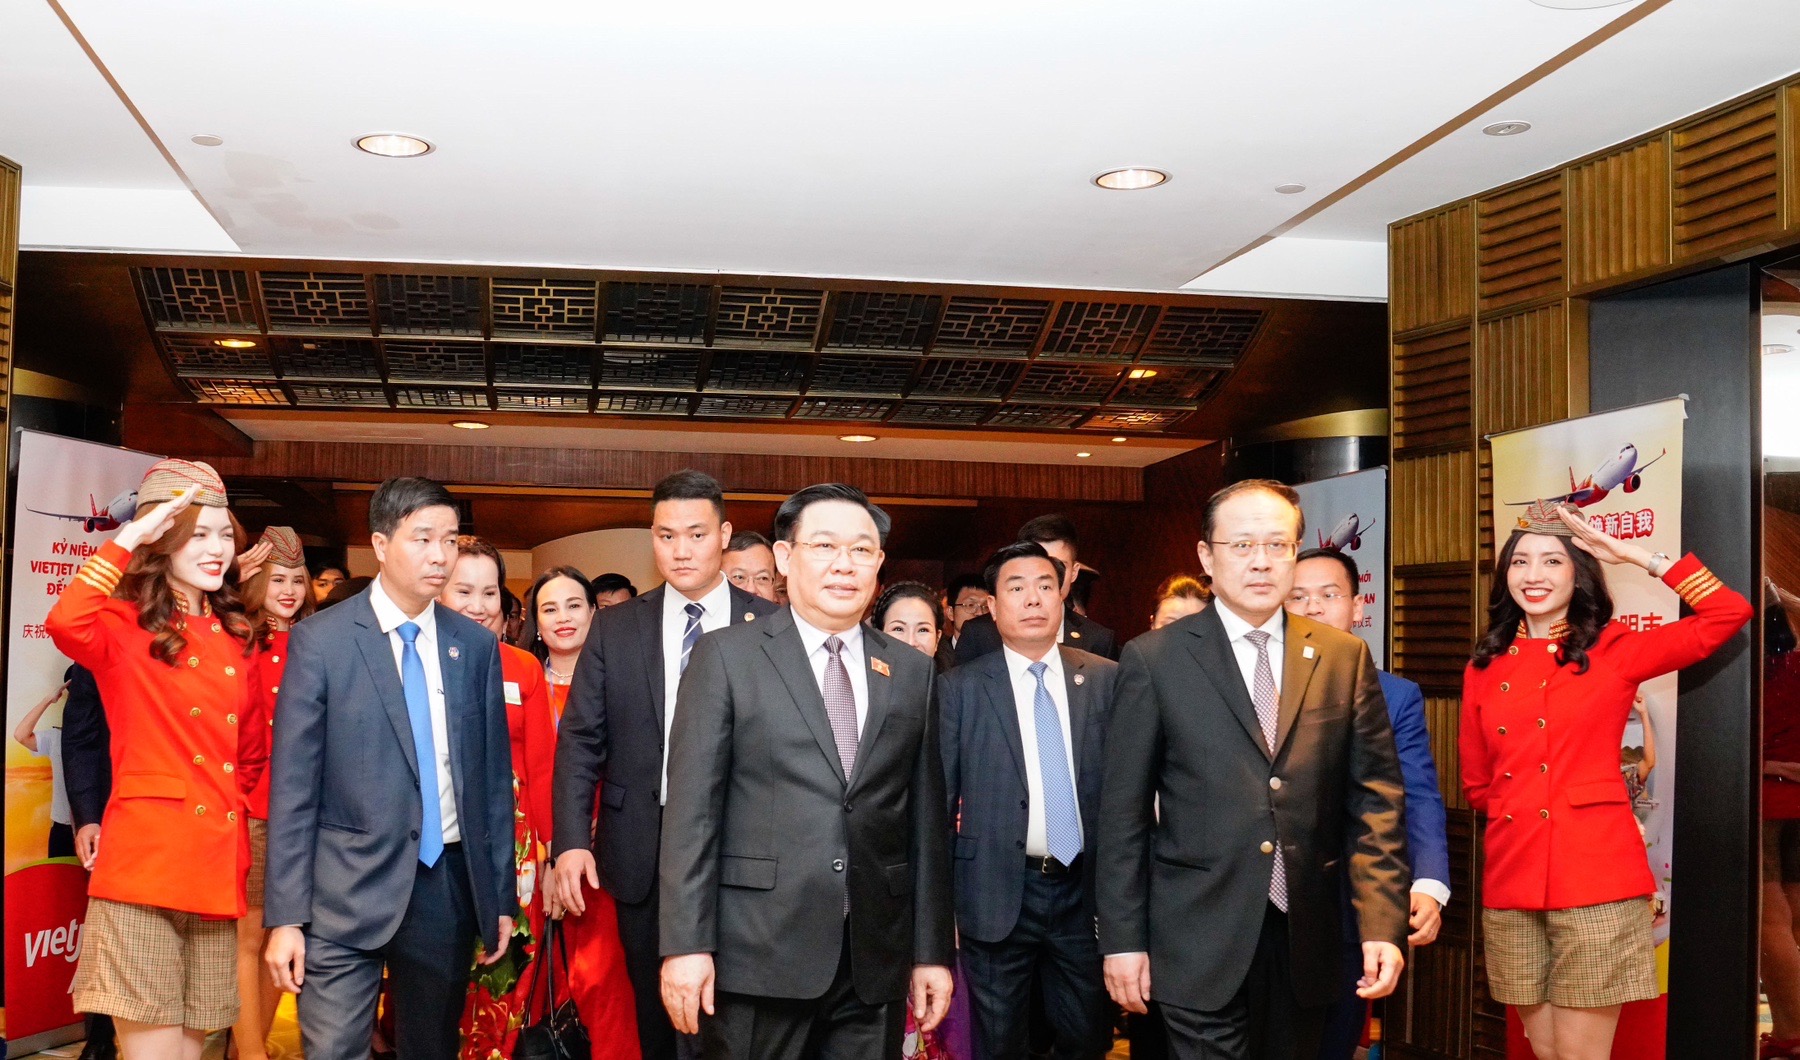 Chủ tịch Quốc hội Vương Đình Huệ cùng đoàn lãnh đạo cấp cao Việt Nam - Trung Quốc tham dự lễ kỷ niệm 10 năm bay Trung Quốc và công bố đường bay TP. Hồ Chí Minh - Tây An của Vietjet.